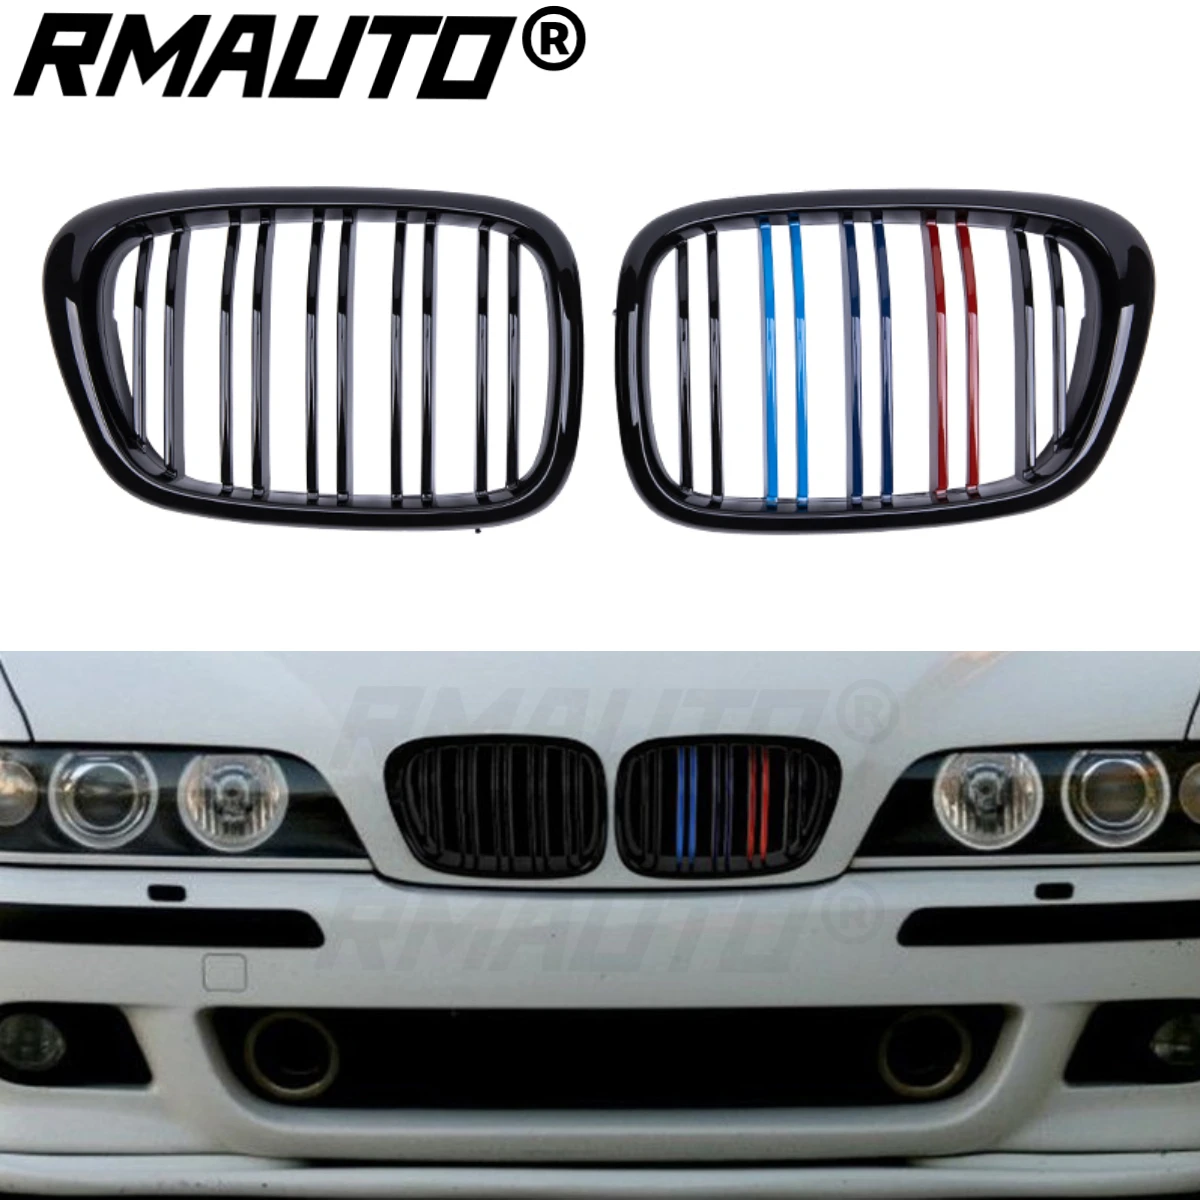 

RMAUTO M стильный передний бампер, решетка радиатора, гоночный гриль, глянцевый черный для BMW E39 5 серии 1997-2003, комплект для тюнинга кузова автомо...